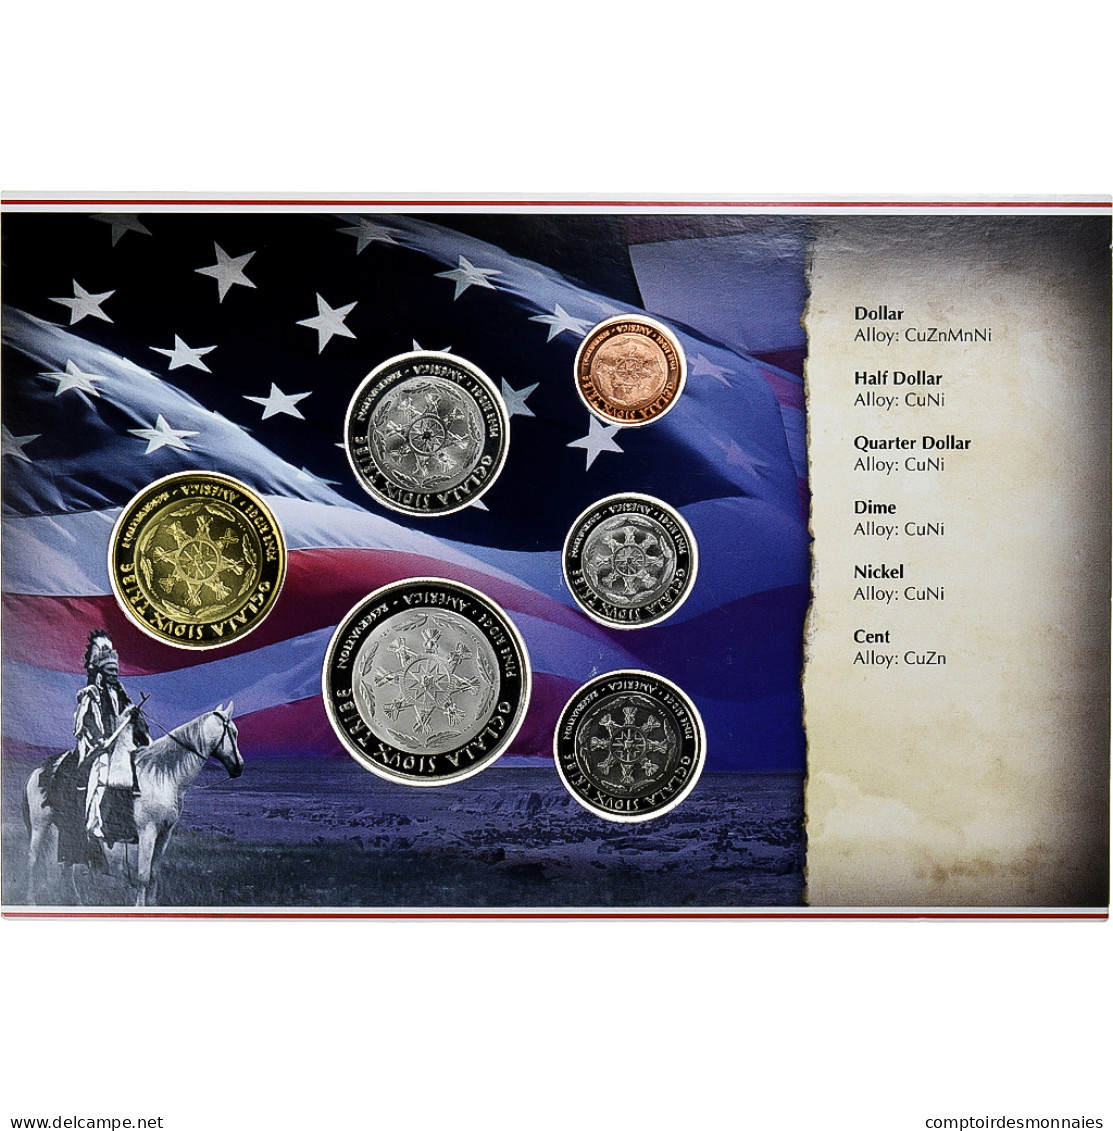 États-Unis, Sovereign Nation Of The Sioux, 1 C. To 1$, FDC - Professionnels/De Société